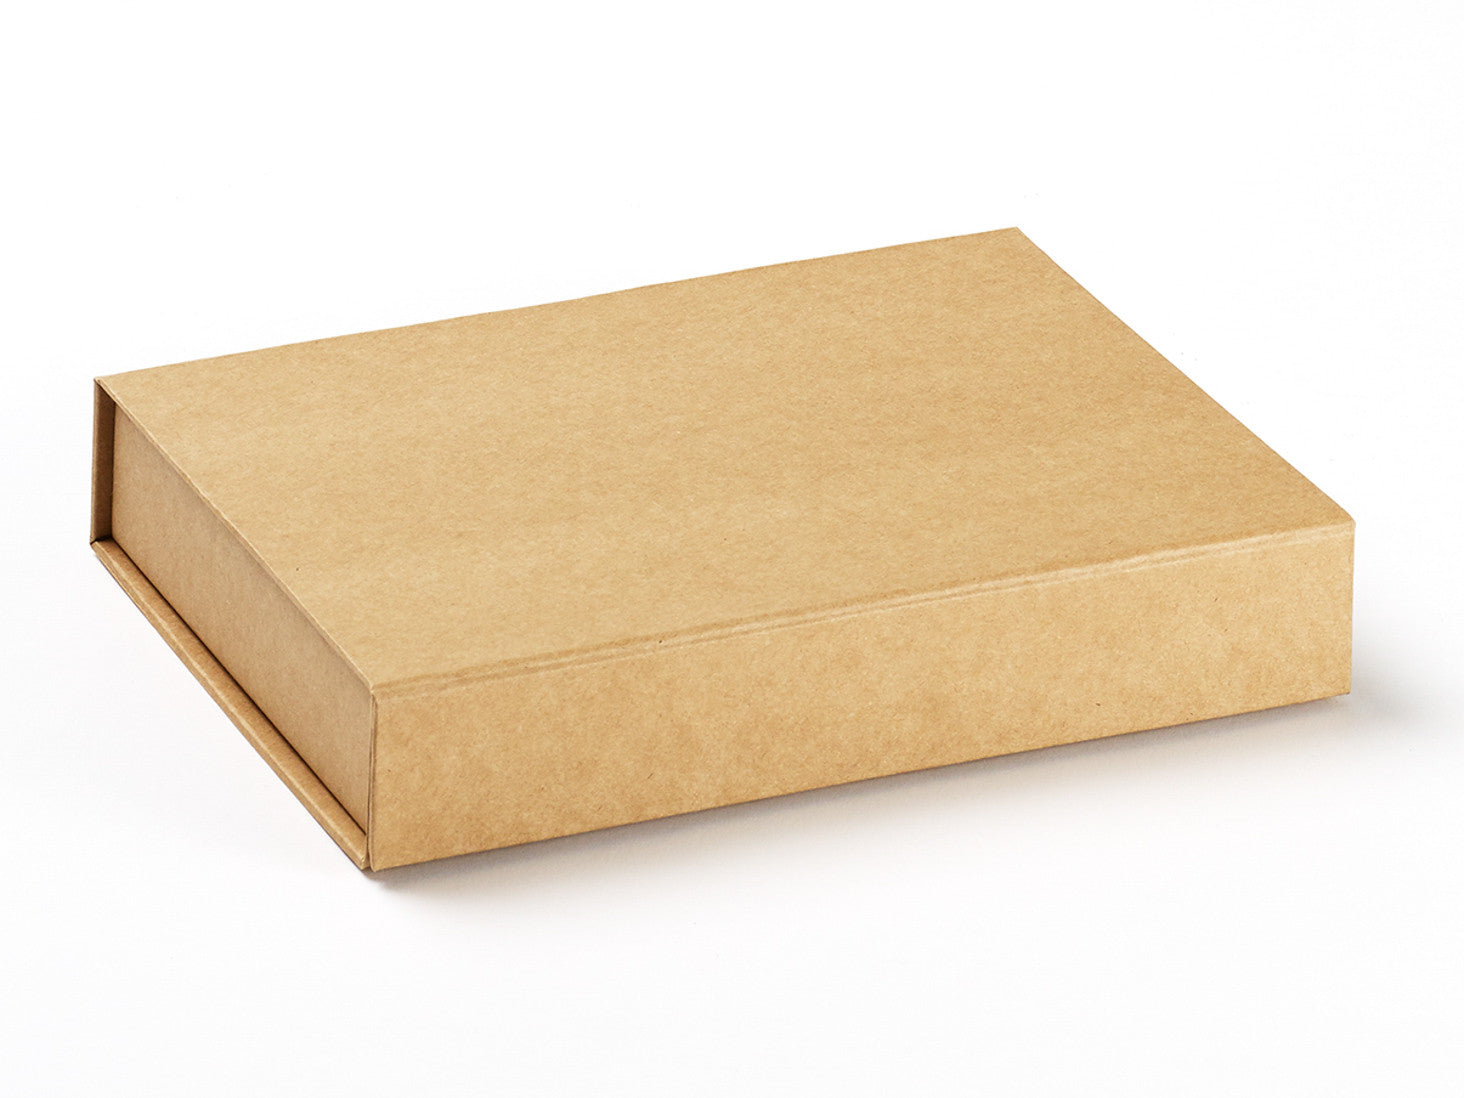 Wholesale Natural A4 Gift Boxes from Foldabox USA - FoldaBox USA